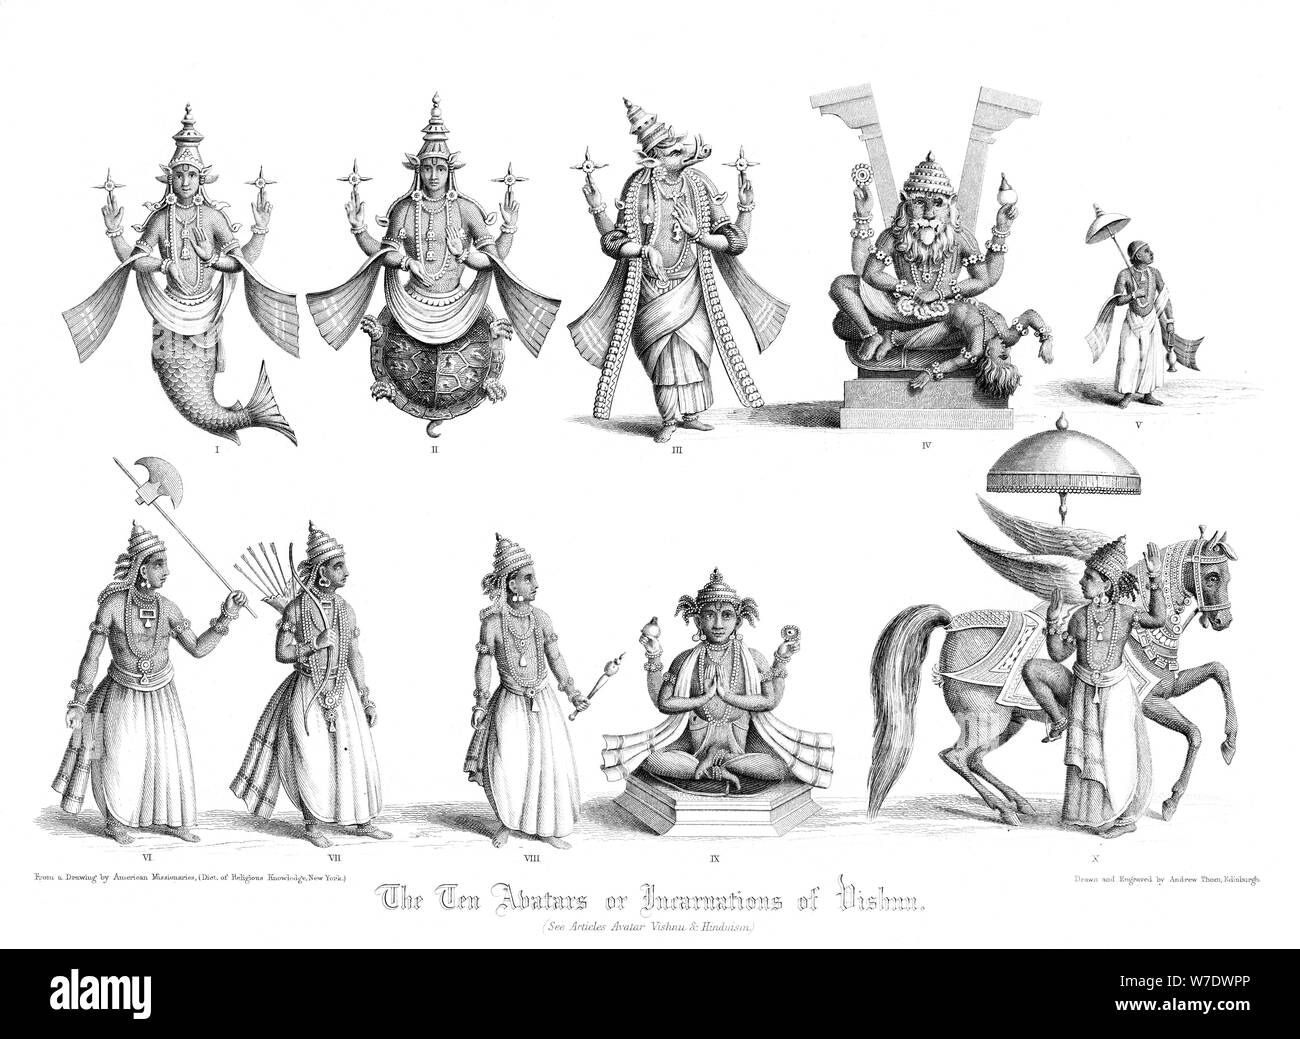 Vishnu Black and White Stock Photos & Images - Alamy